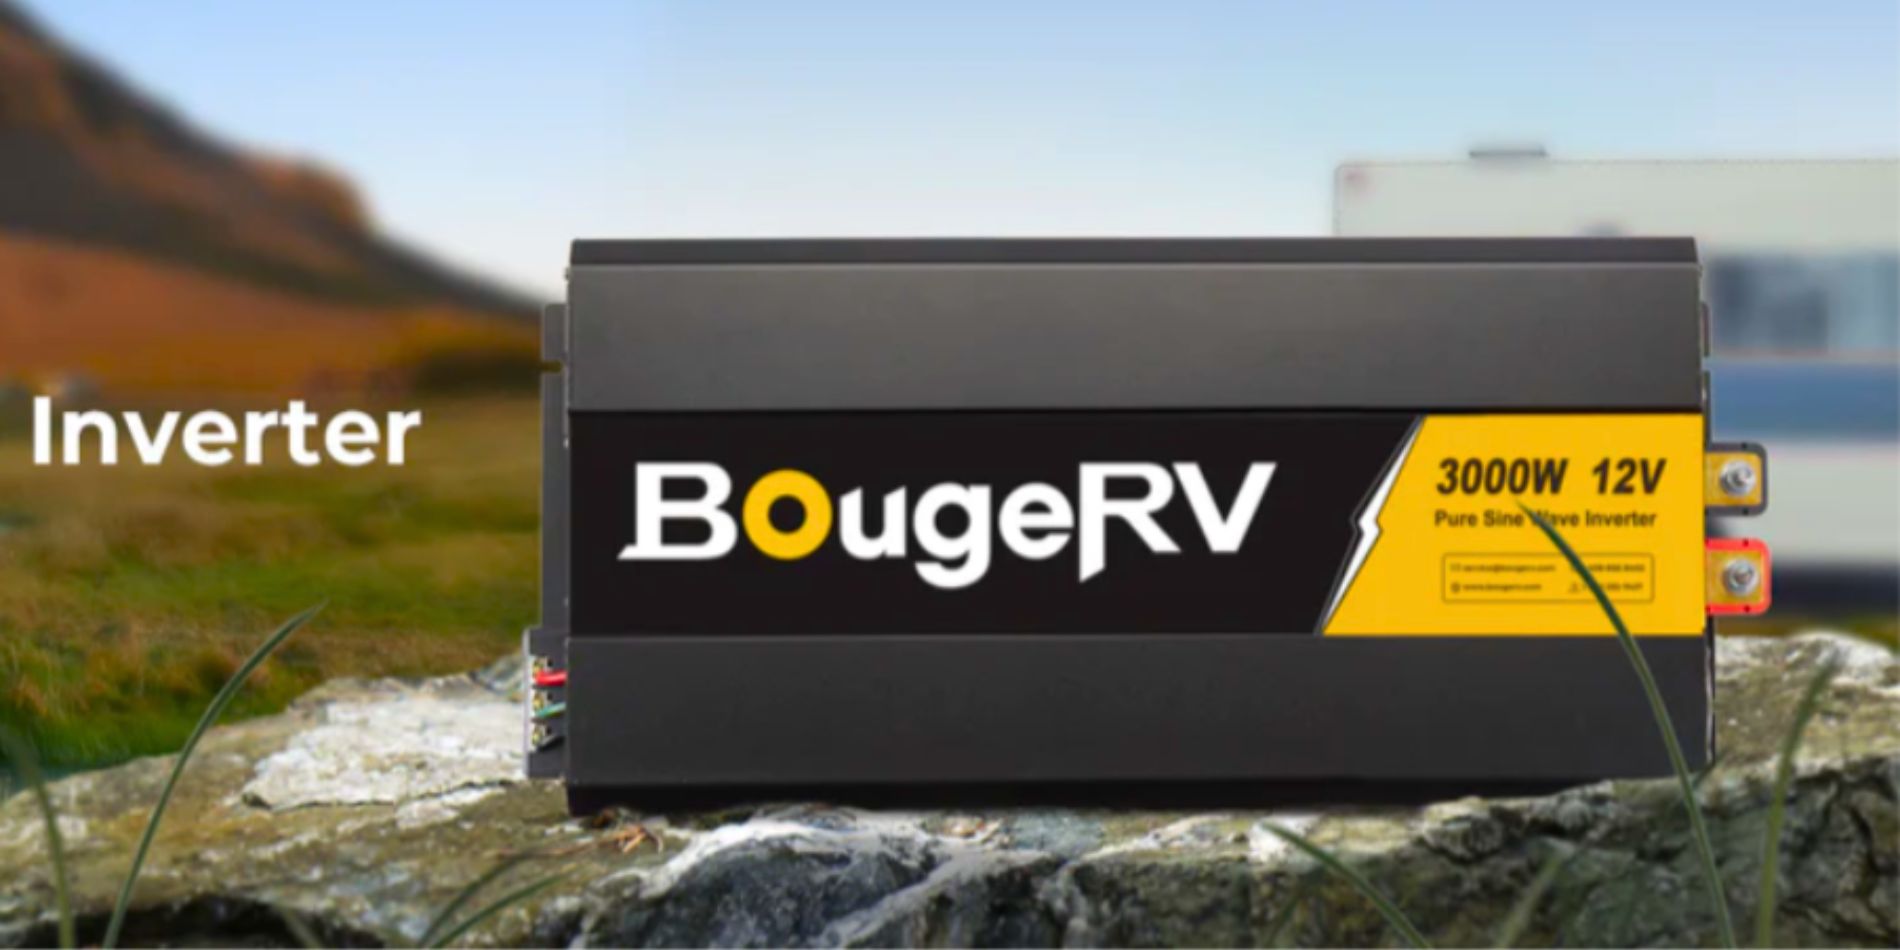 BougeRV’s 3000W 12V solar inverter on the rock